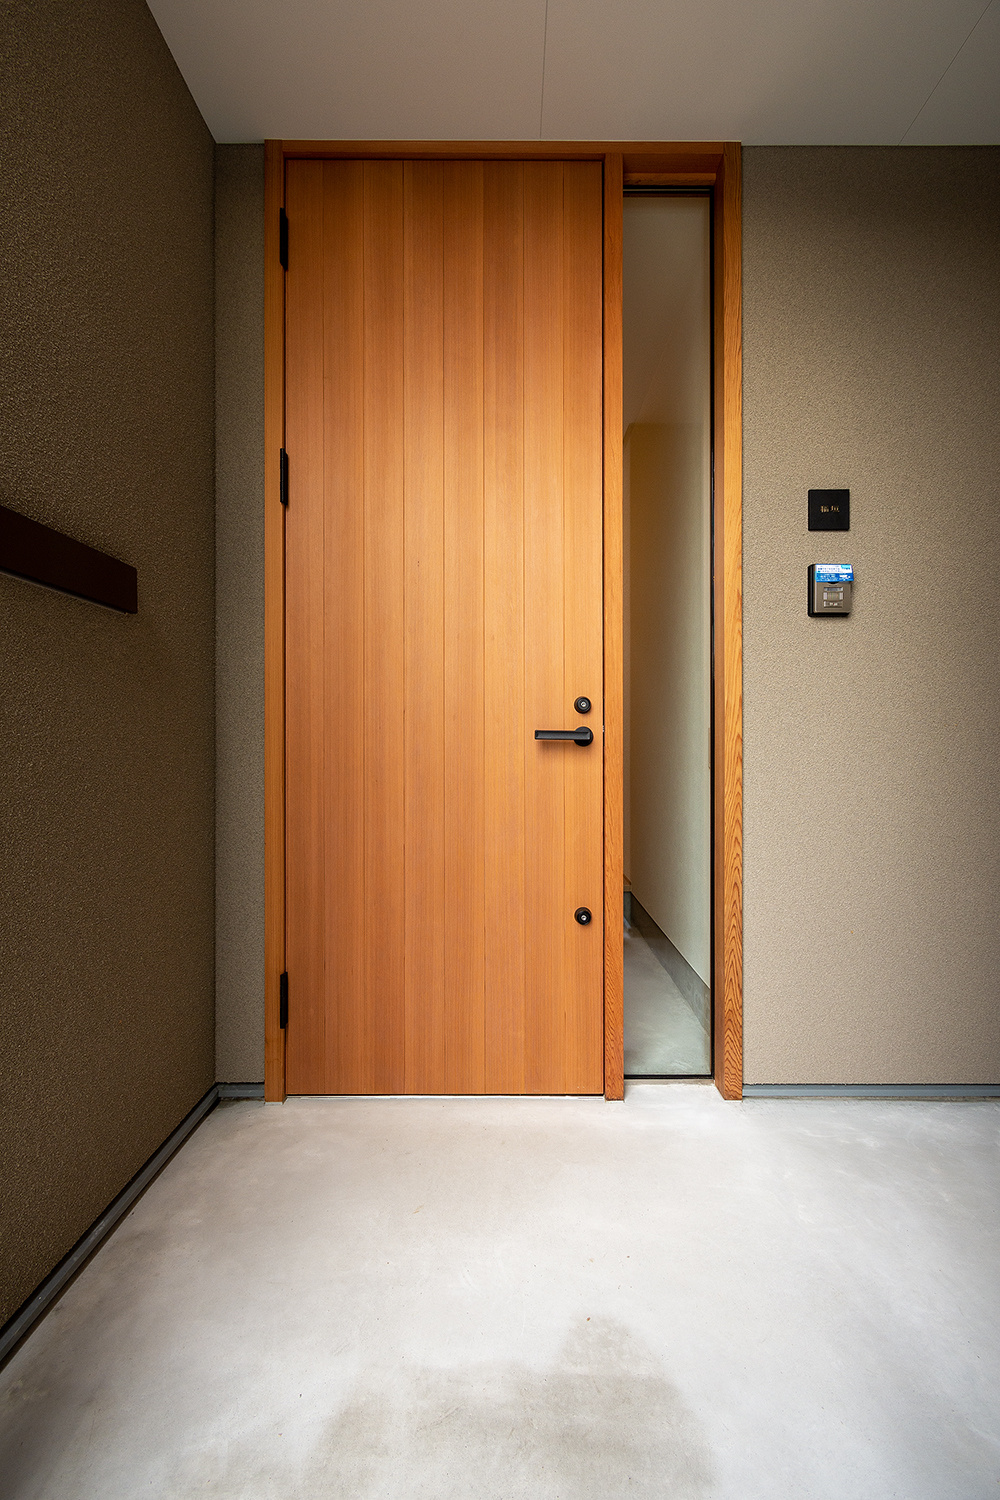 デザイン性と利便性を兼ね備えた玄関建具